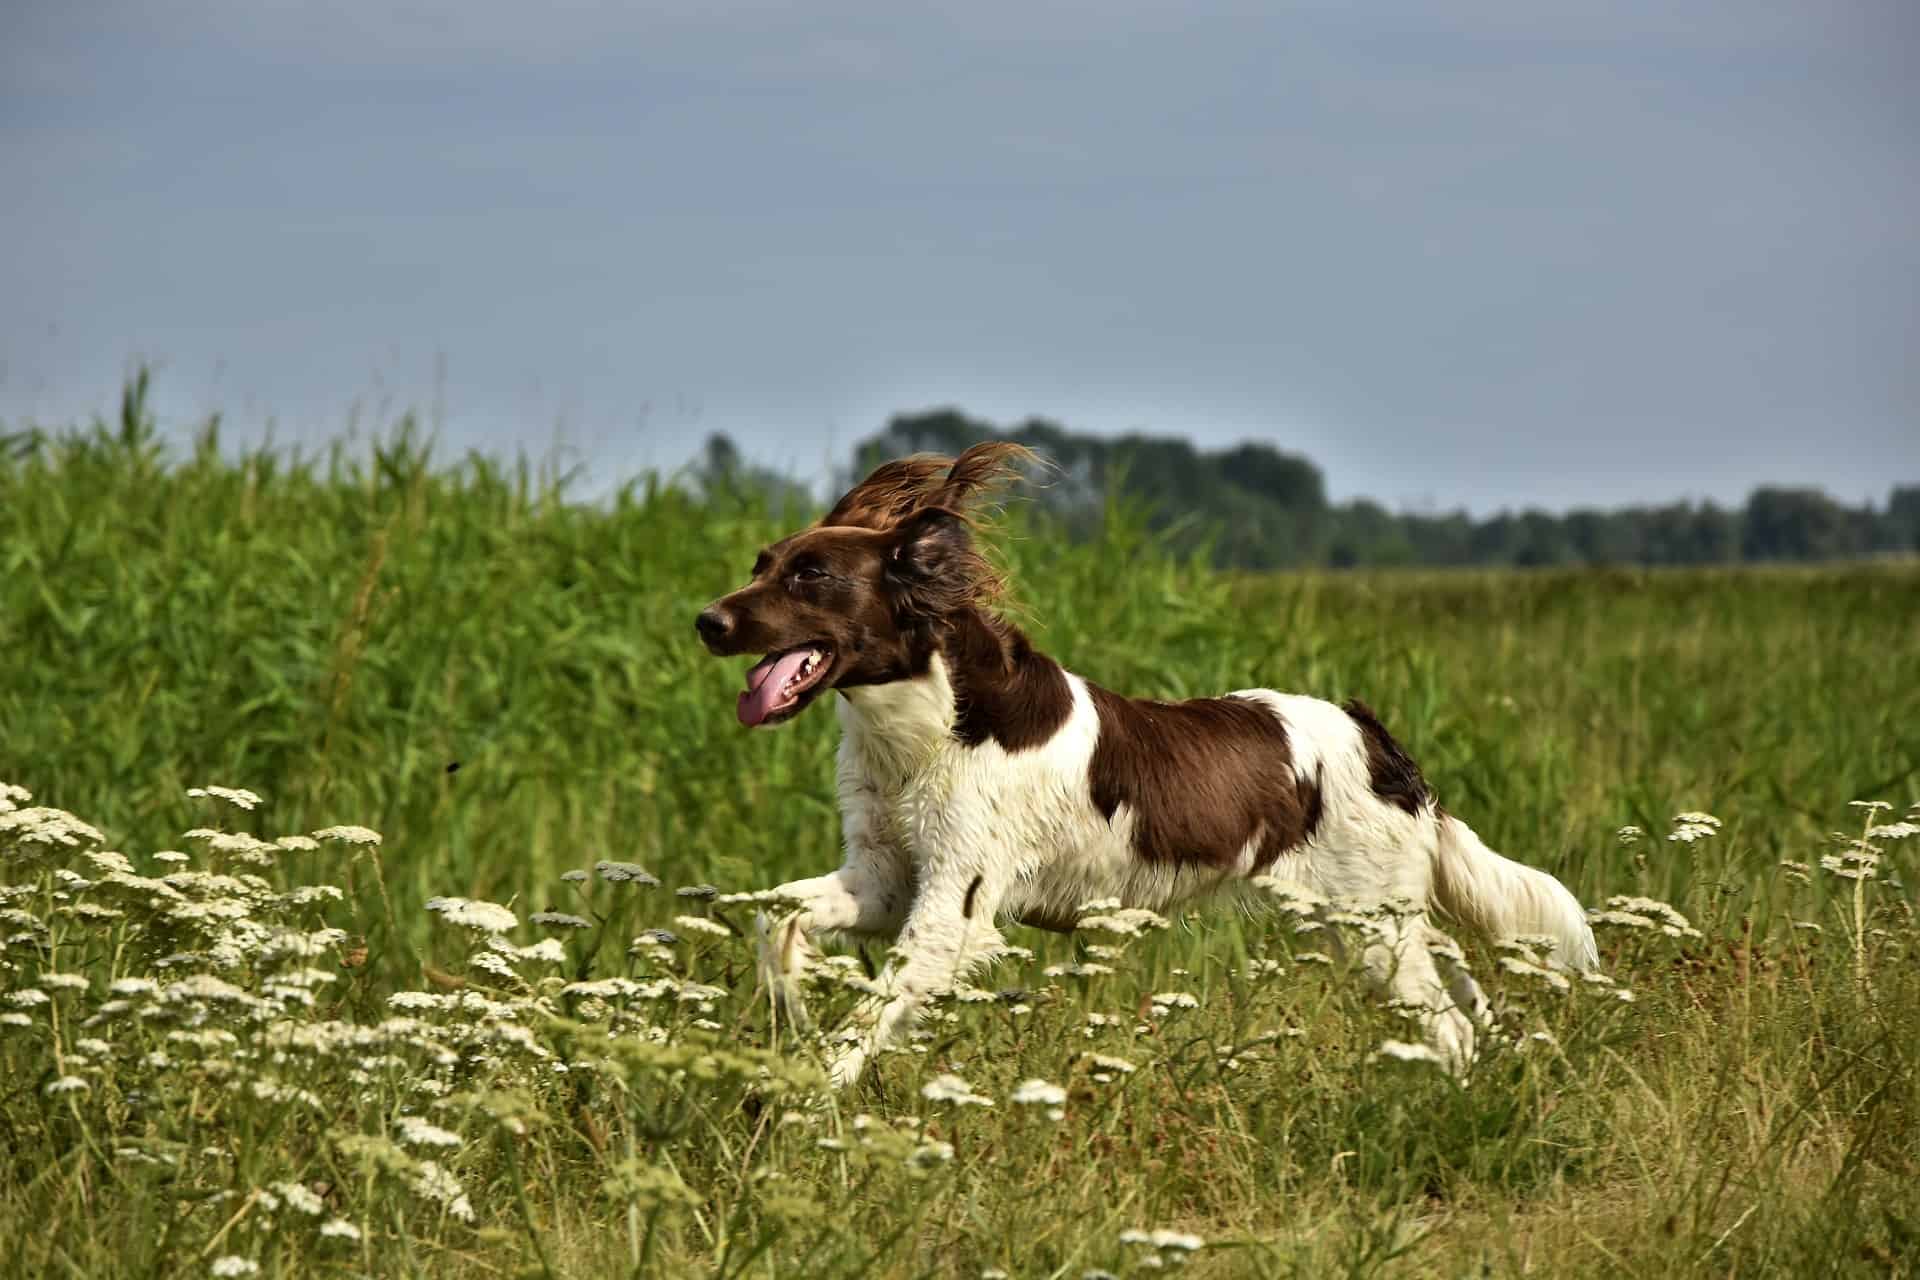 Münsterländer im Lauf in einer Wiese. Hunde brauchen ausreichend Bewegung für ihre Gesundheit. /Foto: Peggychoucair (pixabay)